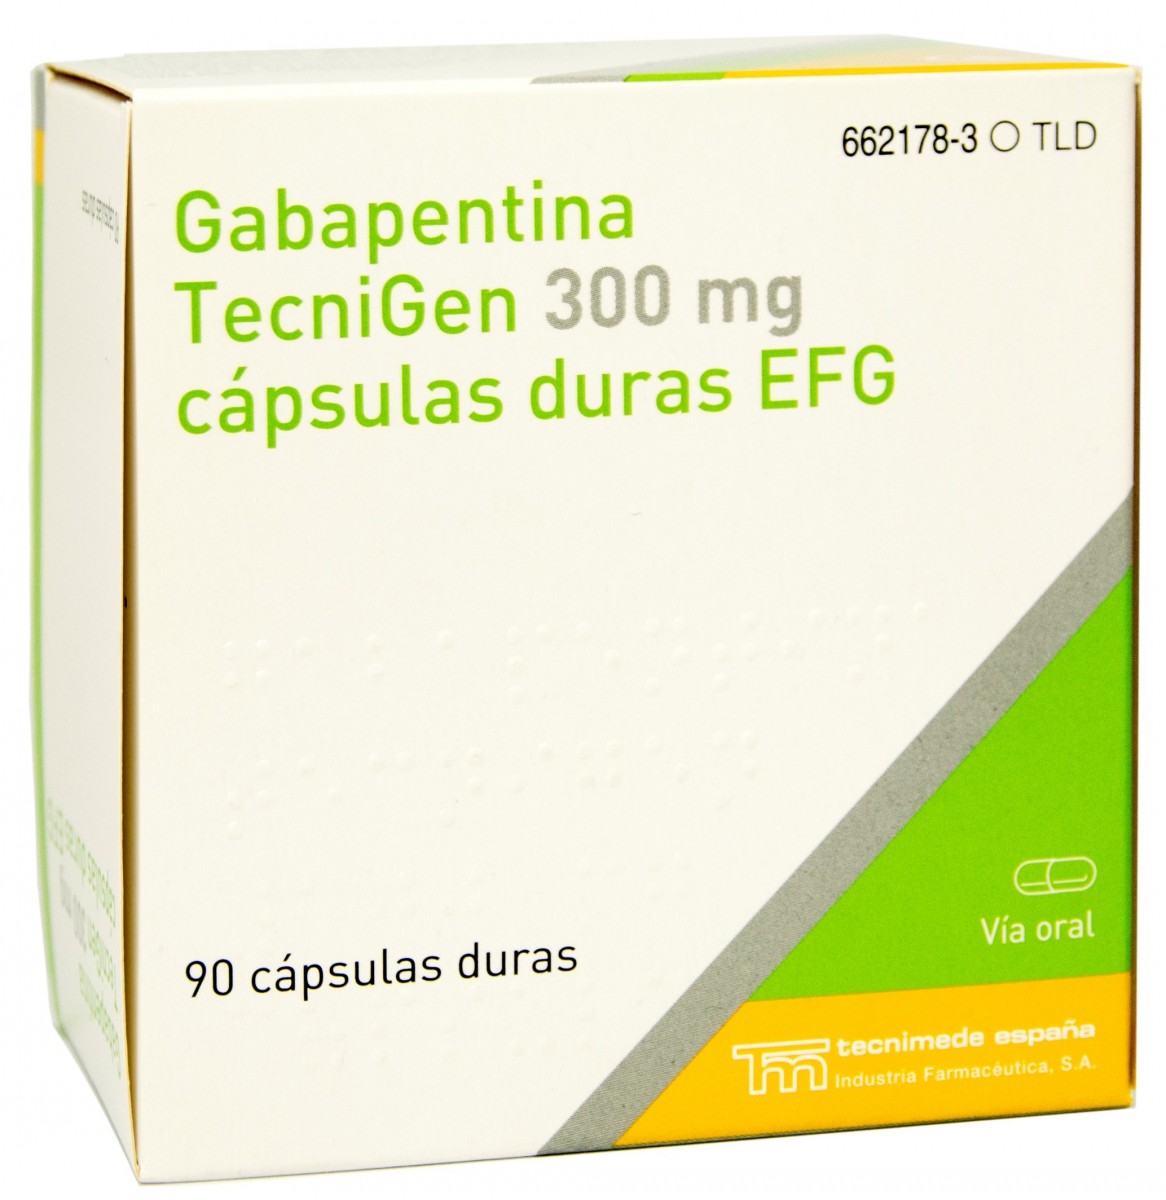 GABAPENTINA TECNIGEN 300 mg CAPSULAS DURAS EFG, 90 cápsulas fotografía del envase.